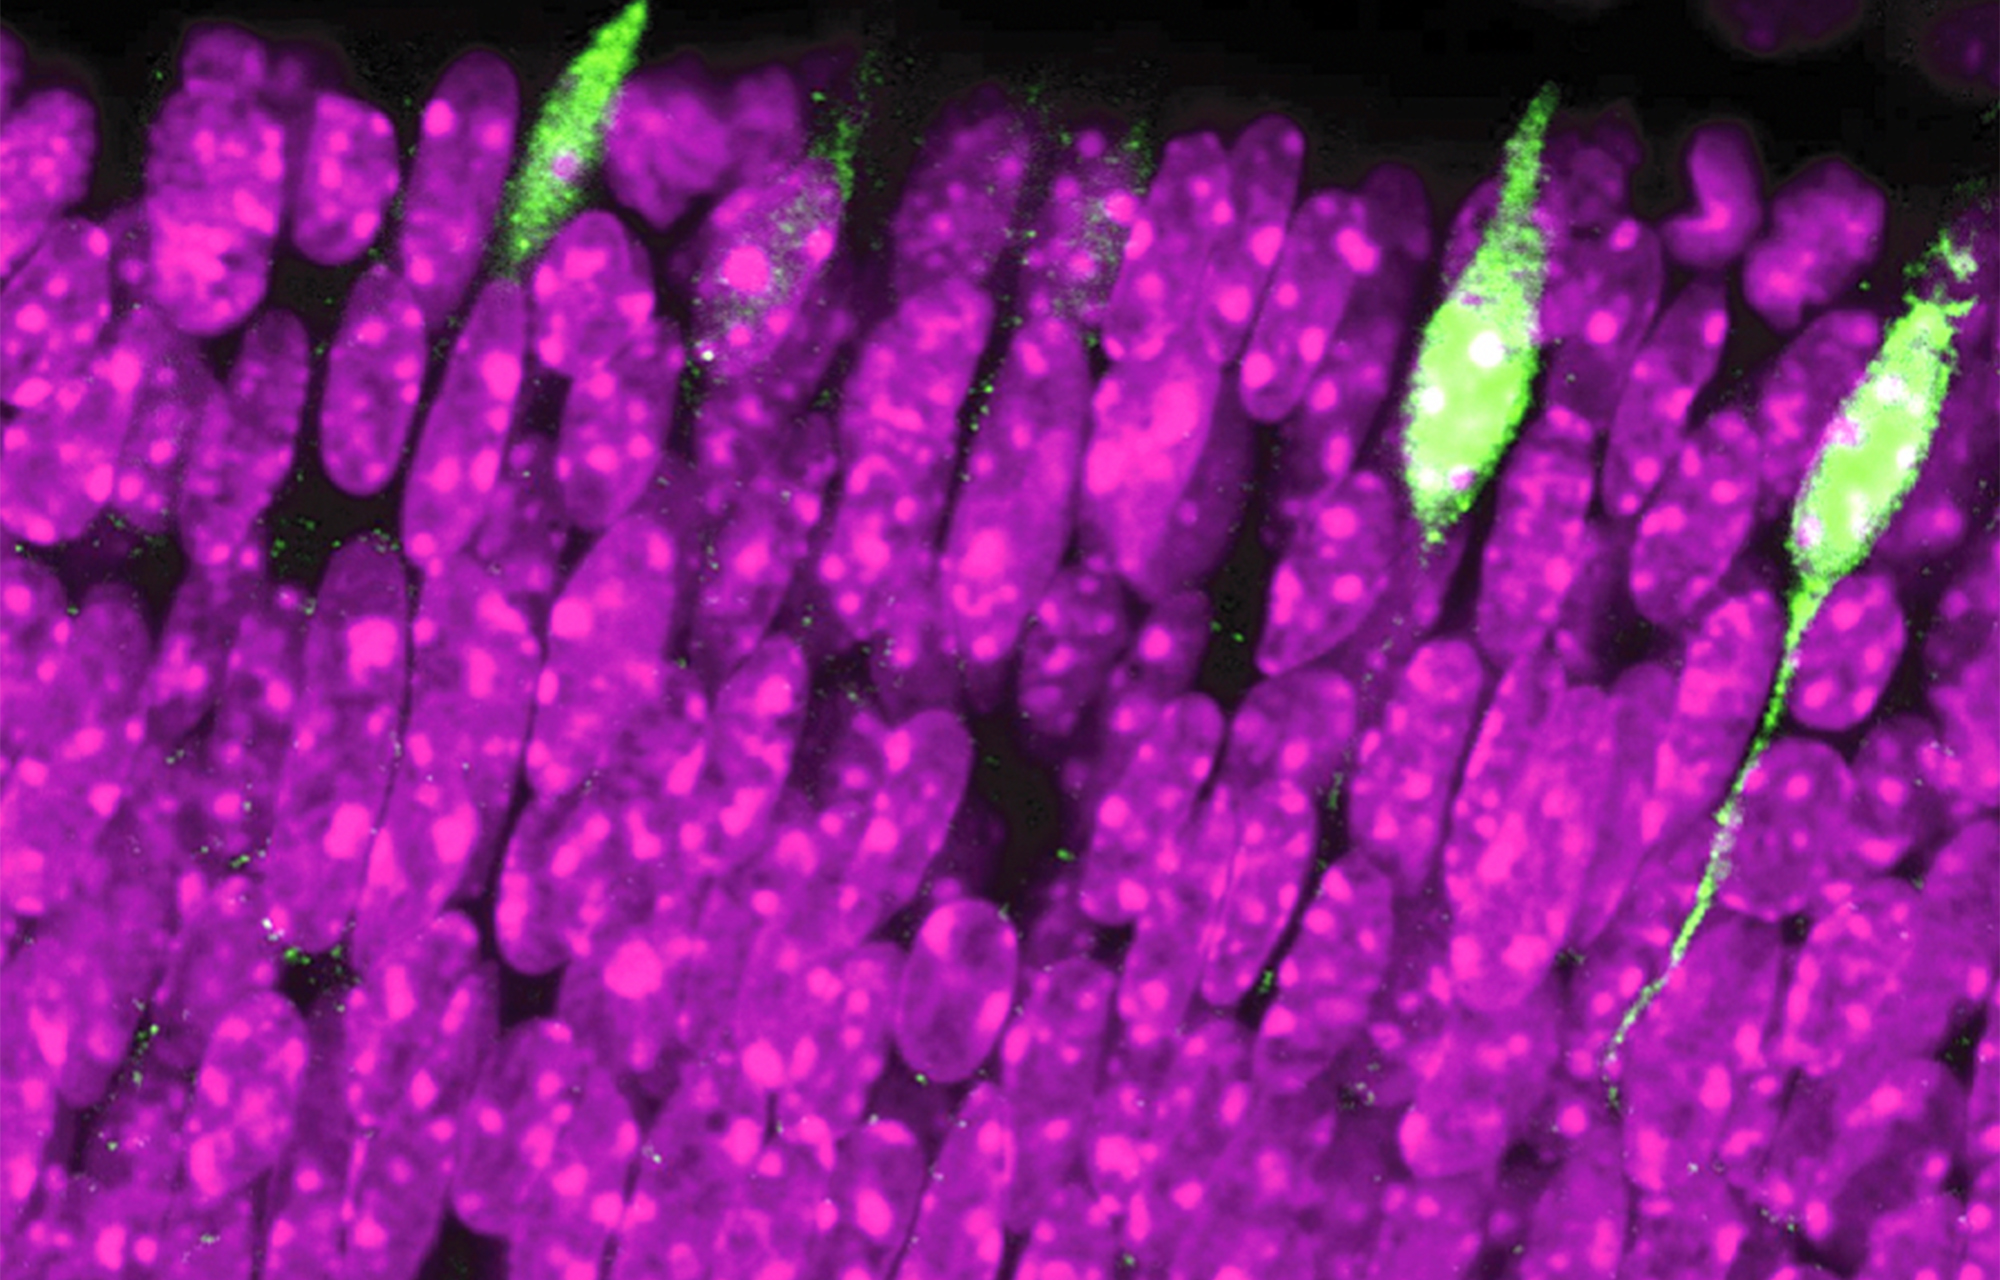 Células fotorreceptoras responsables de la visión del color. Al secuenciar una célula cada vez, los investigadores identificaron un gen (Rbp4) presente en una pequeña cantidad de células (en verde). En púrpura, fotorreceptores en los que el gen Rbp4 no está activado. © UNIGE, Pierre Fabre